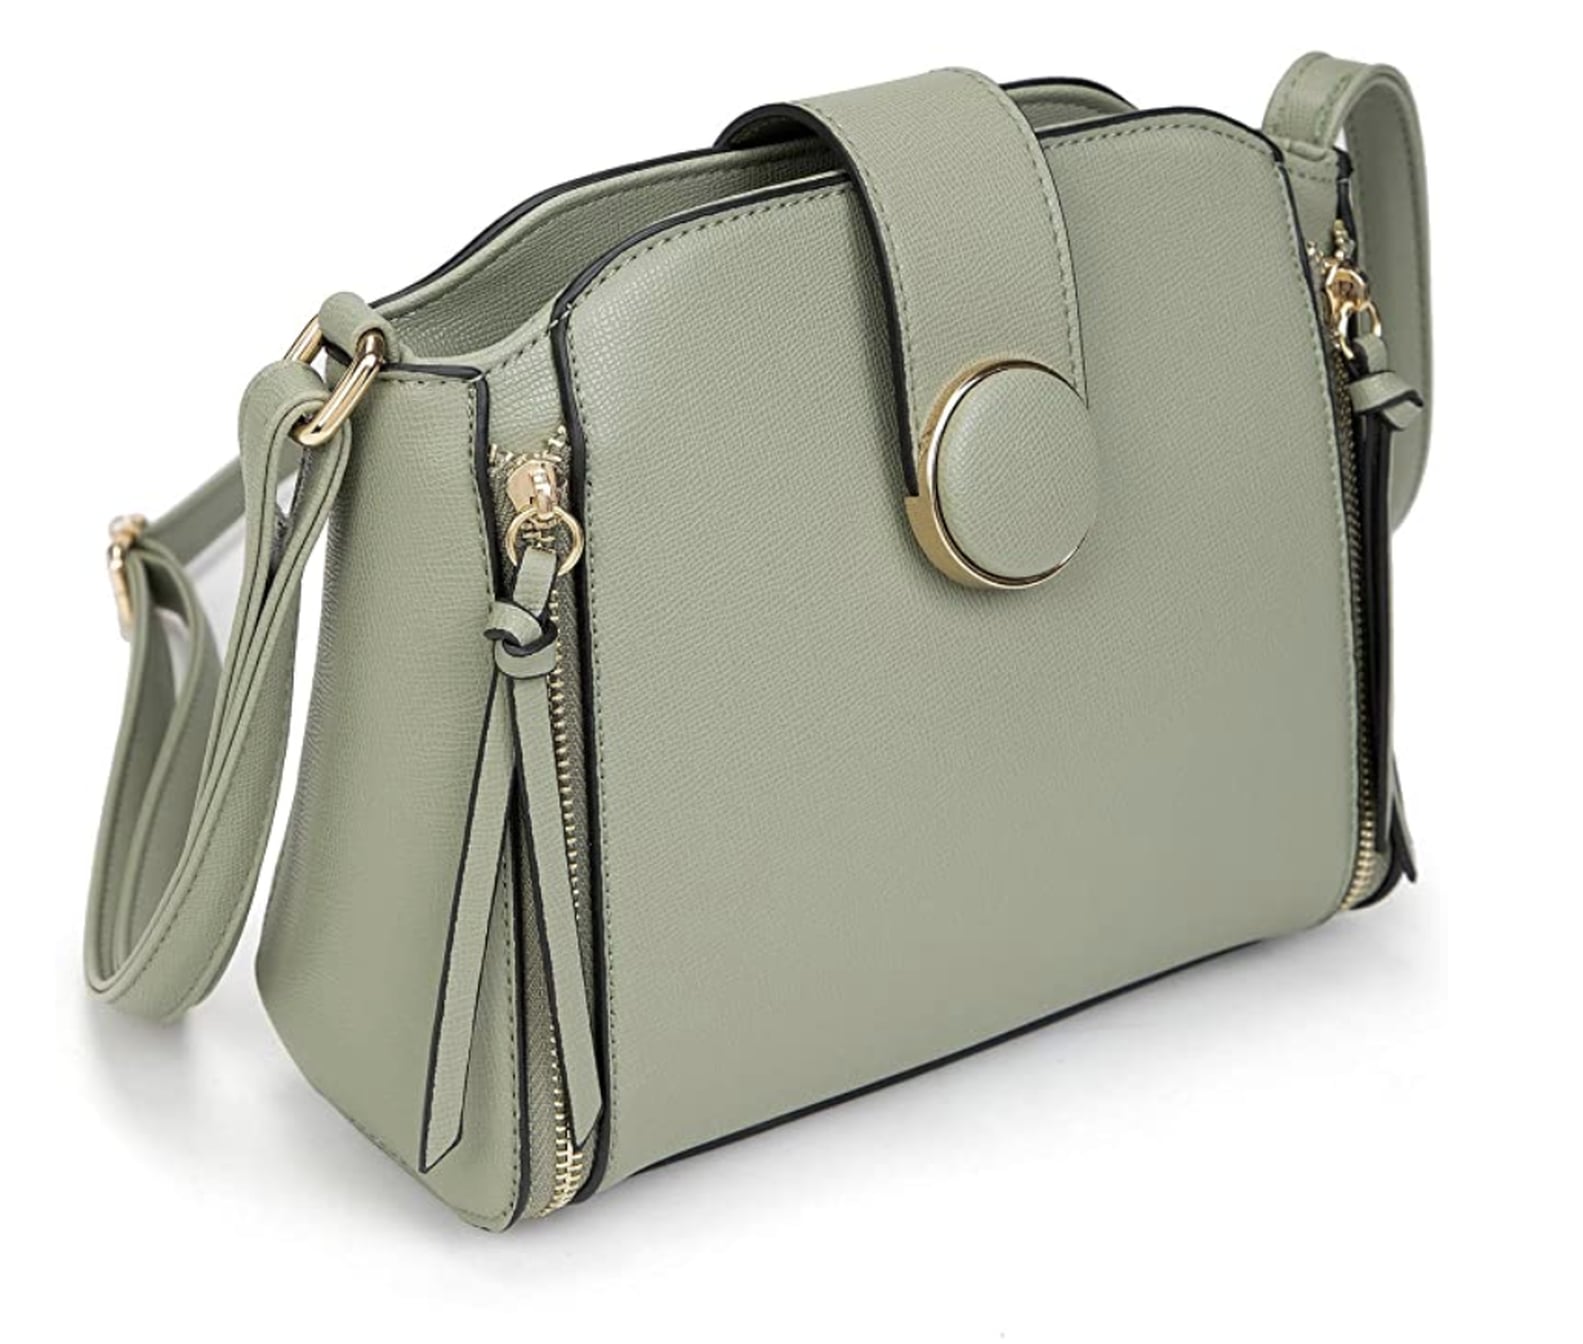 Cute Crossbody Bags on Amazon | POPSUGAR Fashion